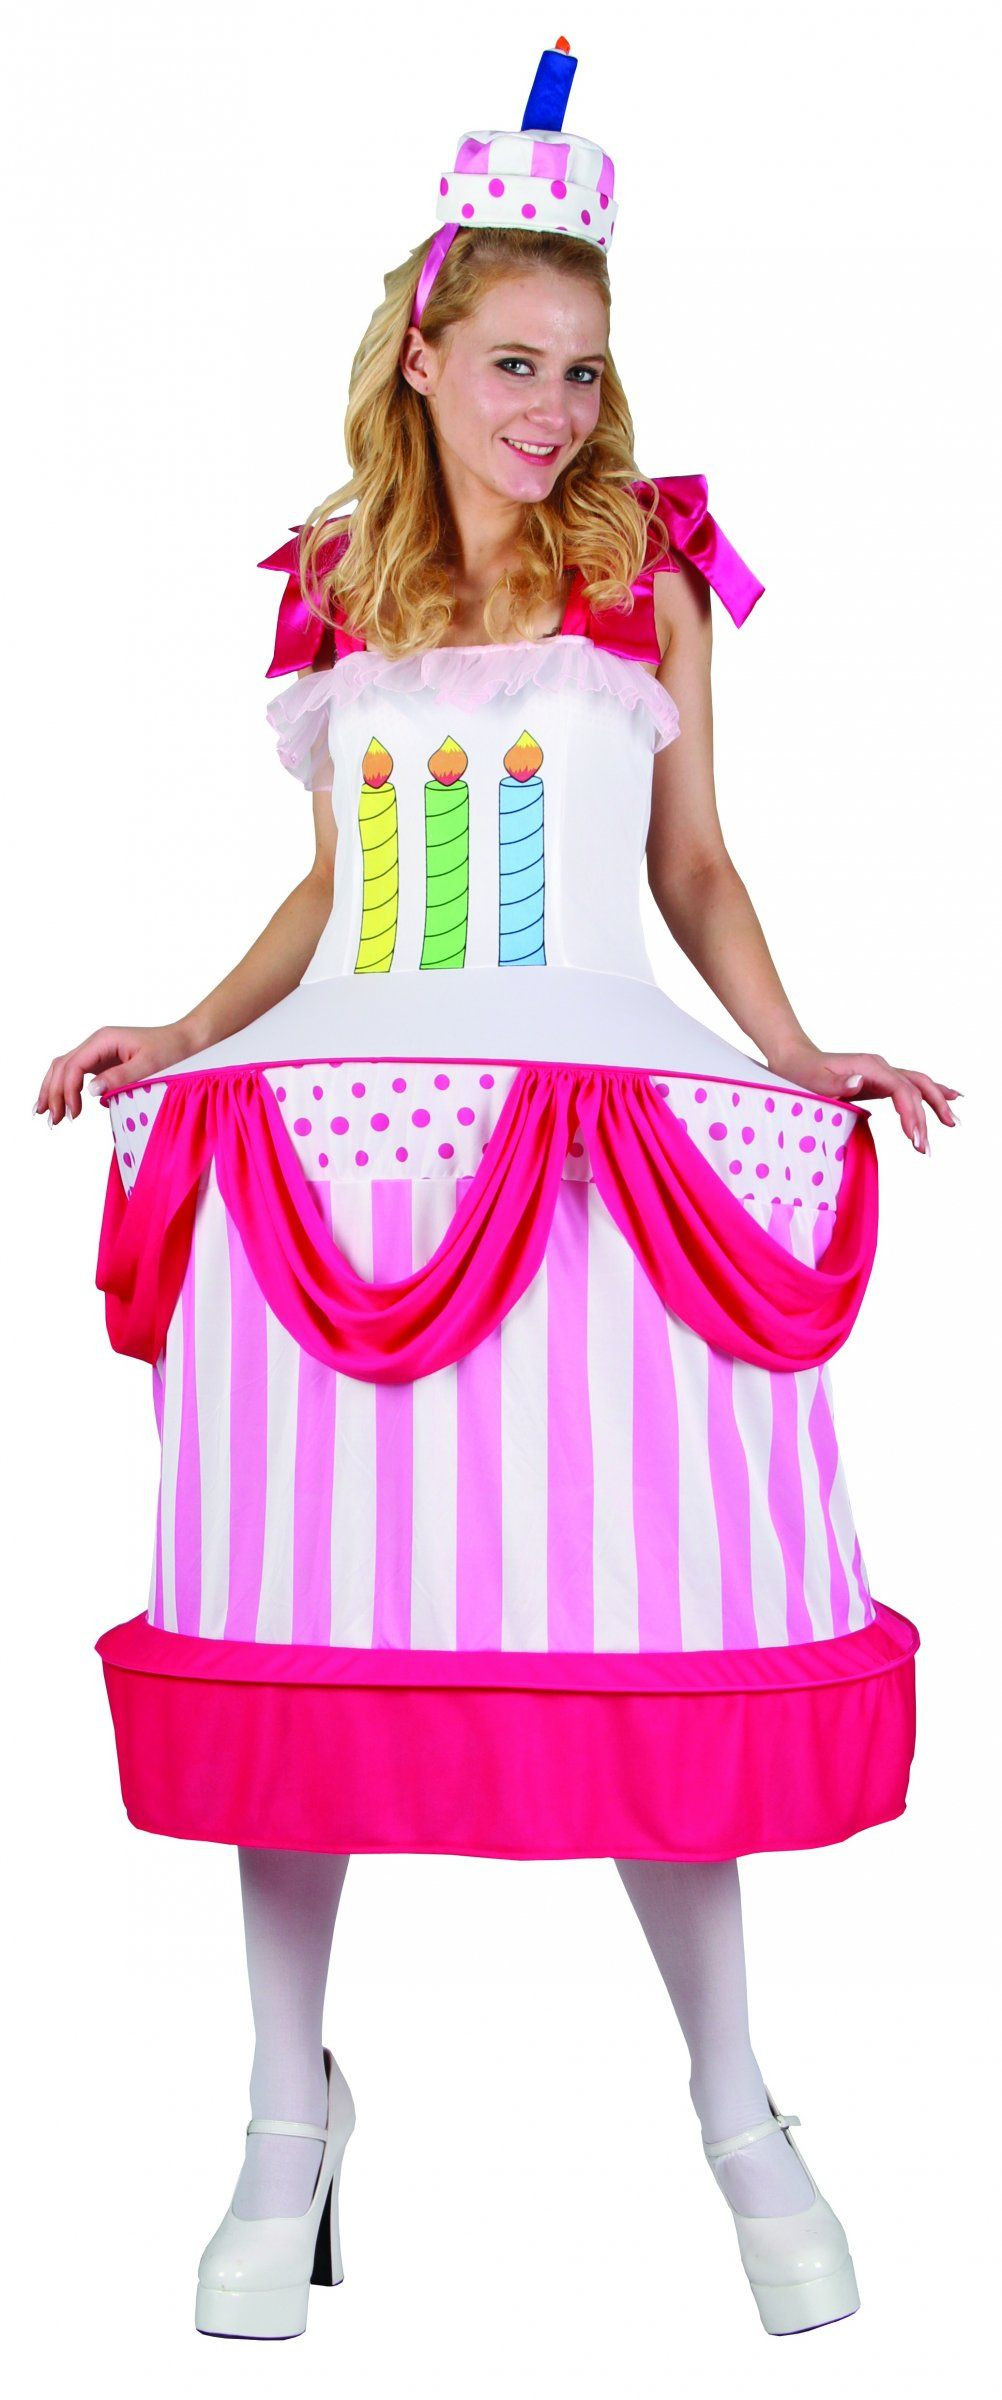 Birthday Cake Halloween Costume
 Birthday cake costume for women in 2019